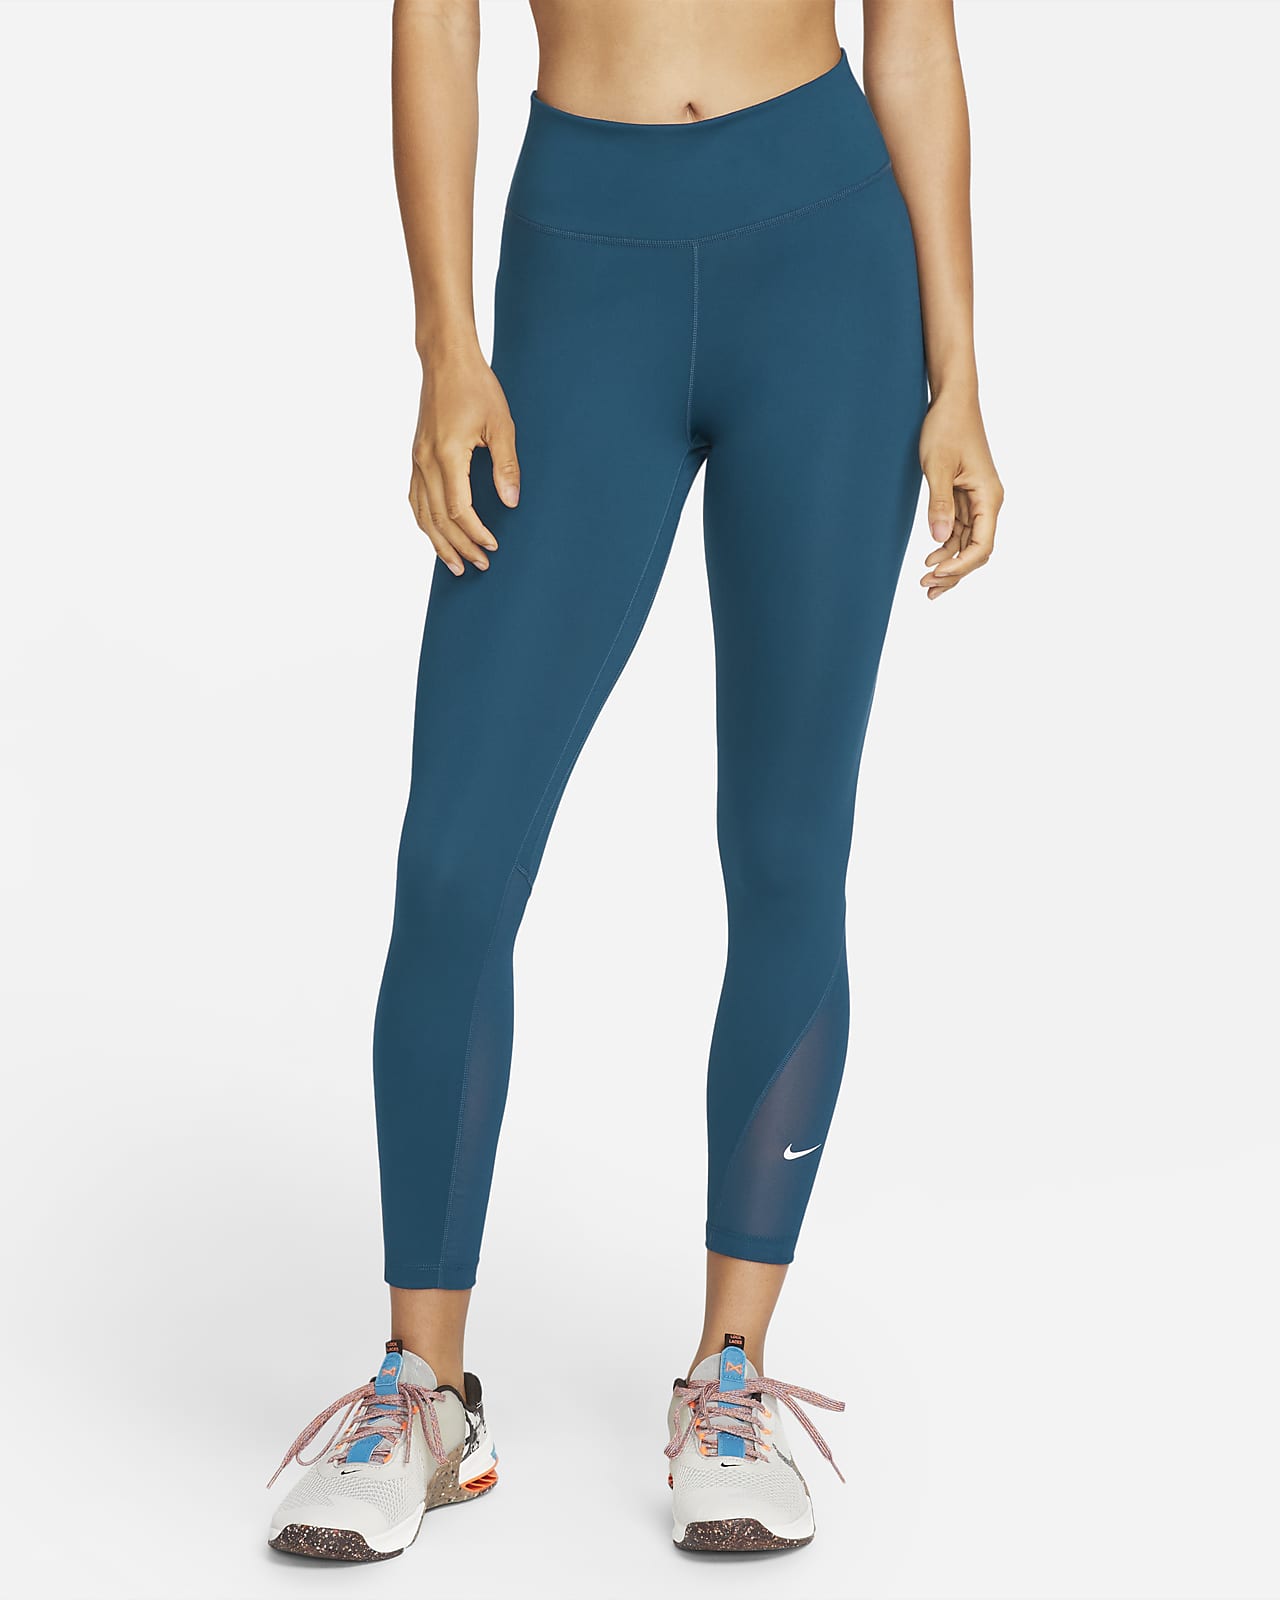 Legging 7/8 taille mi-haute à empiècements en mesh Nike One pour Femme